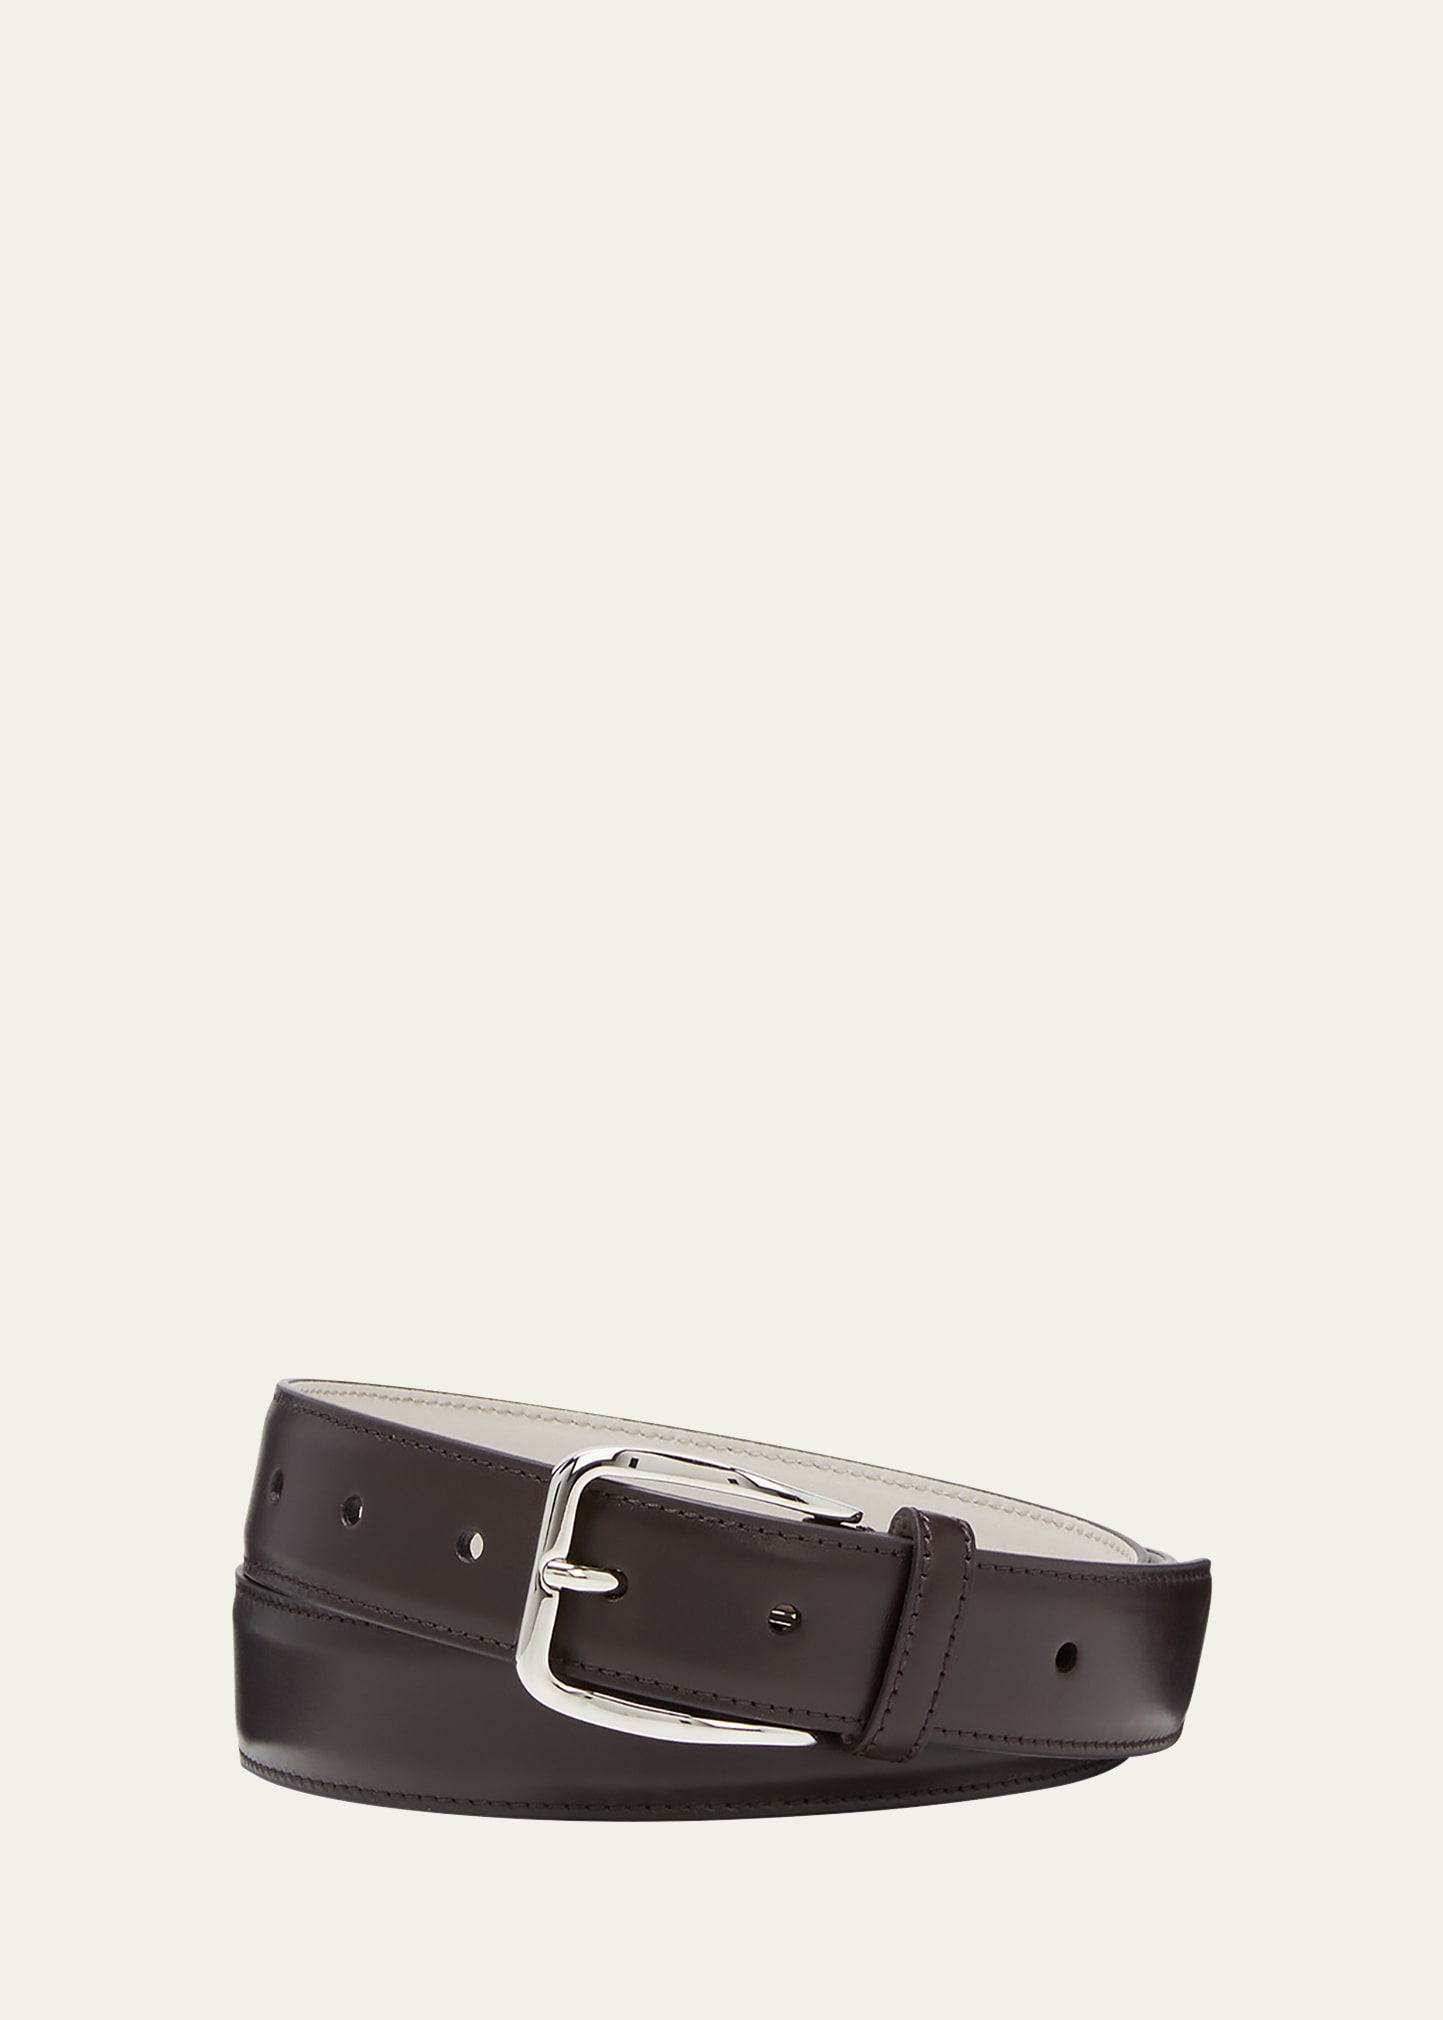 Brunello Cucinelli Men's Leather Belt In Dark Brown